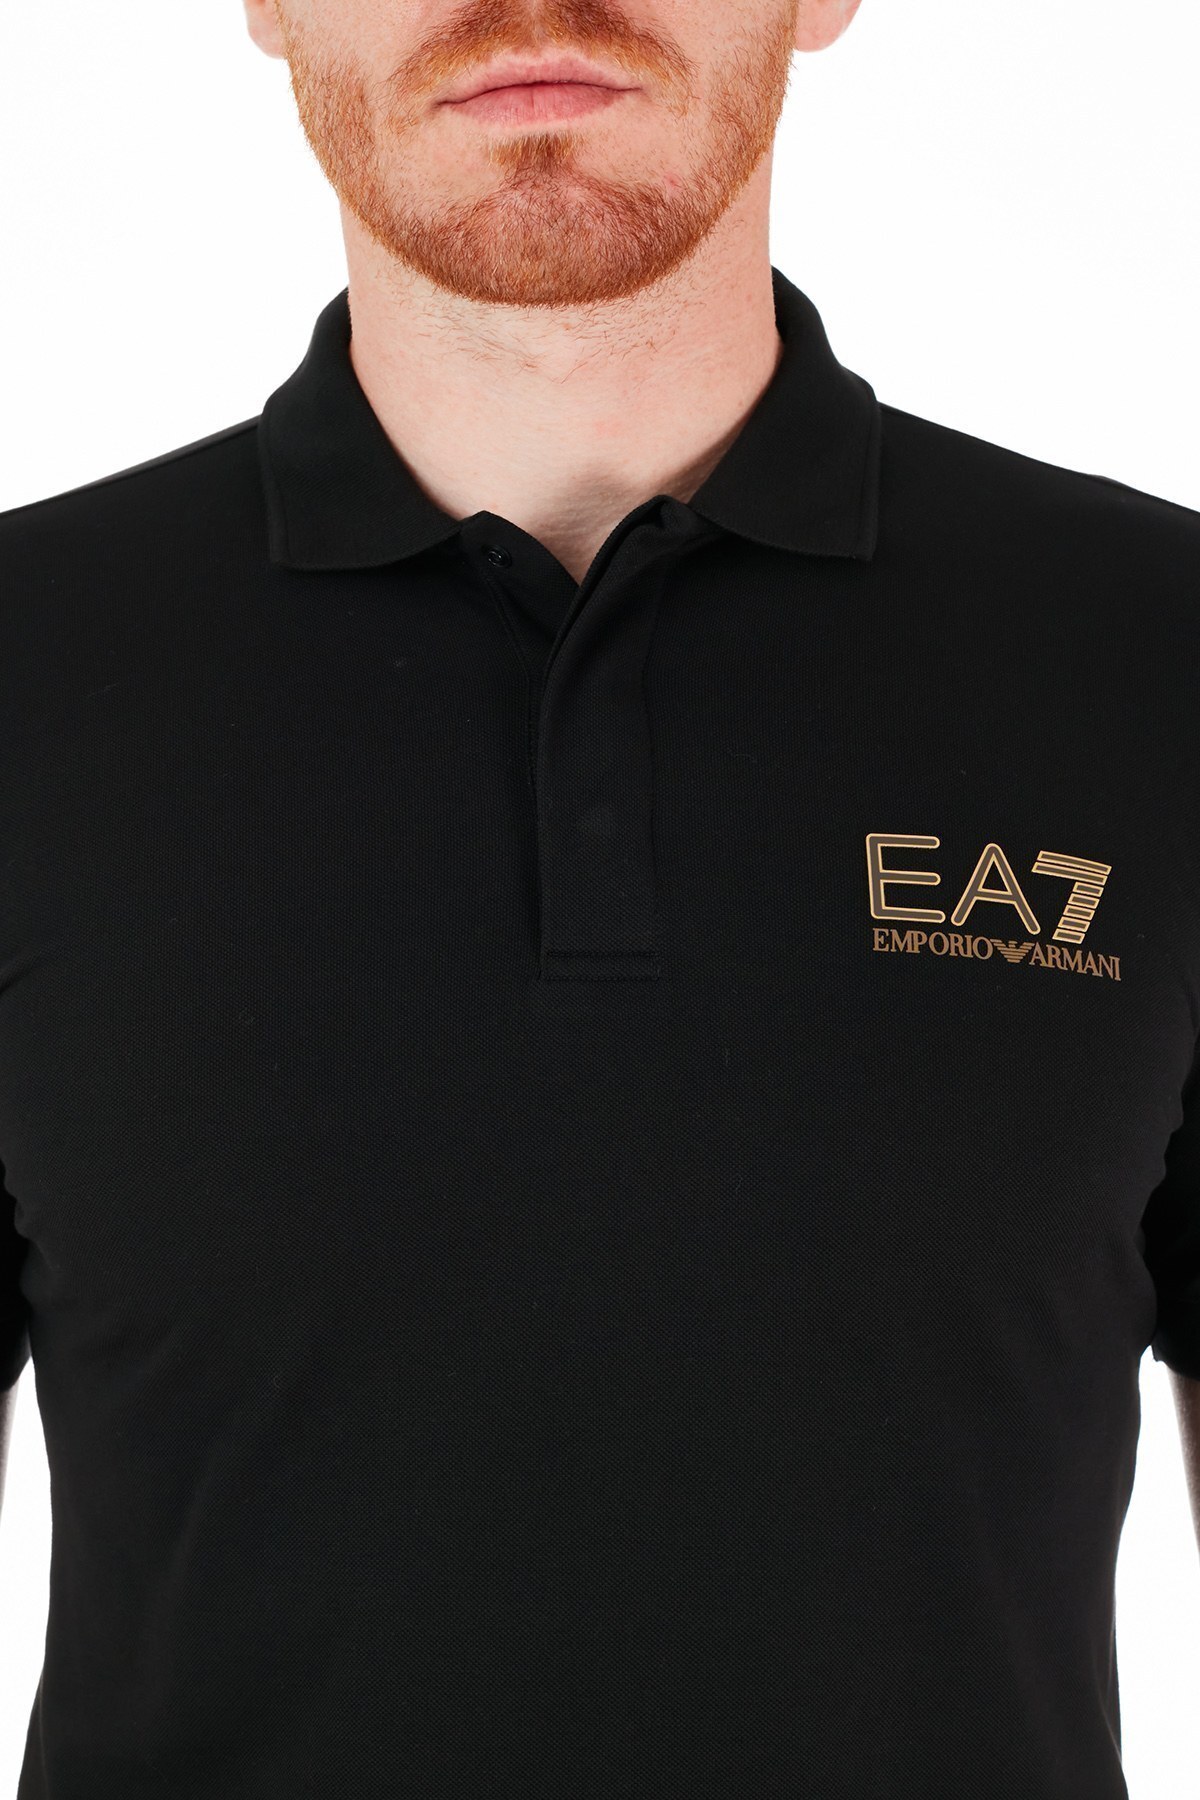 EA7 Marka Logolu % 100 Pamuk T Shirt Erkek Polo 3KPF36 PJ5AZ 1200 SİYAH